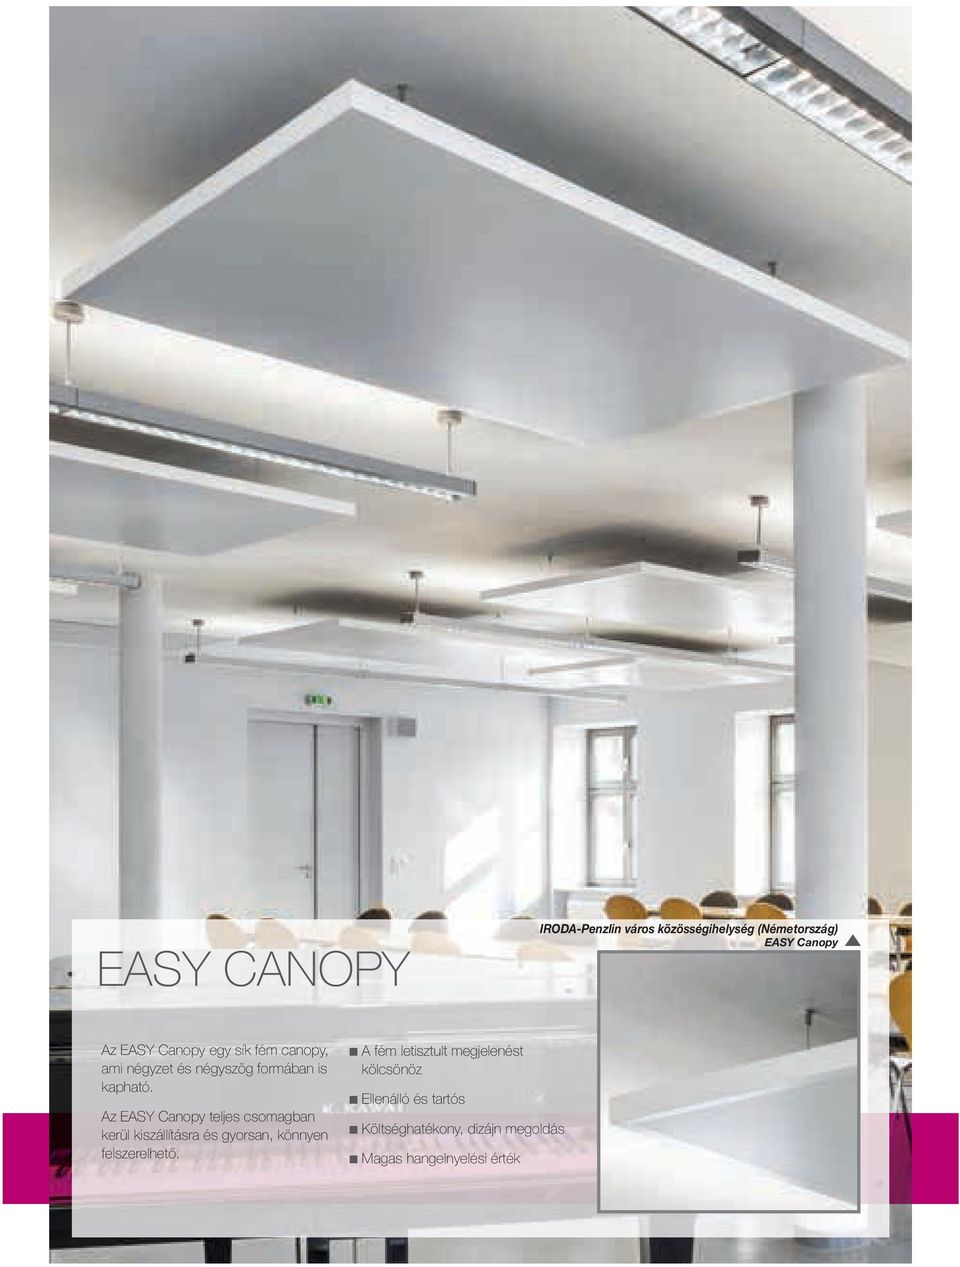 Az EASY Canopy teljes csomagban kerül kiszállításra és gyorsan, könnyen felszerelhető.